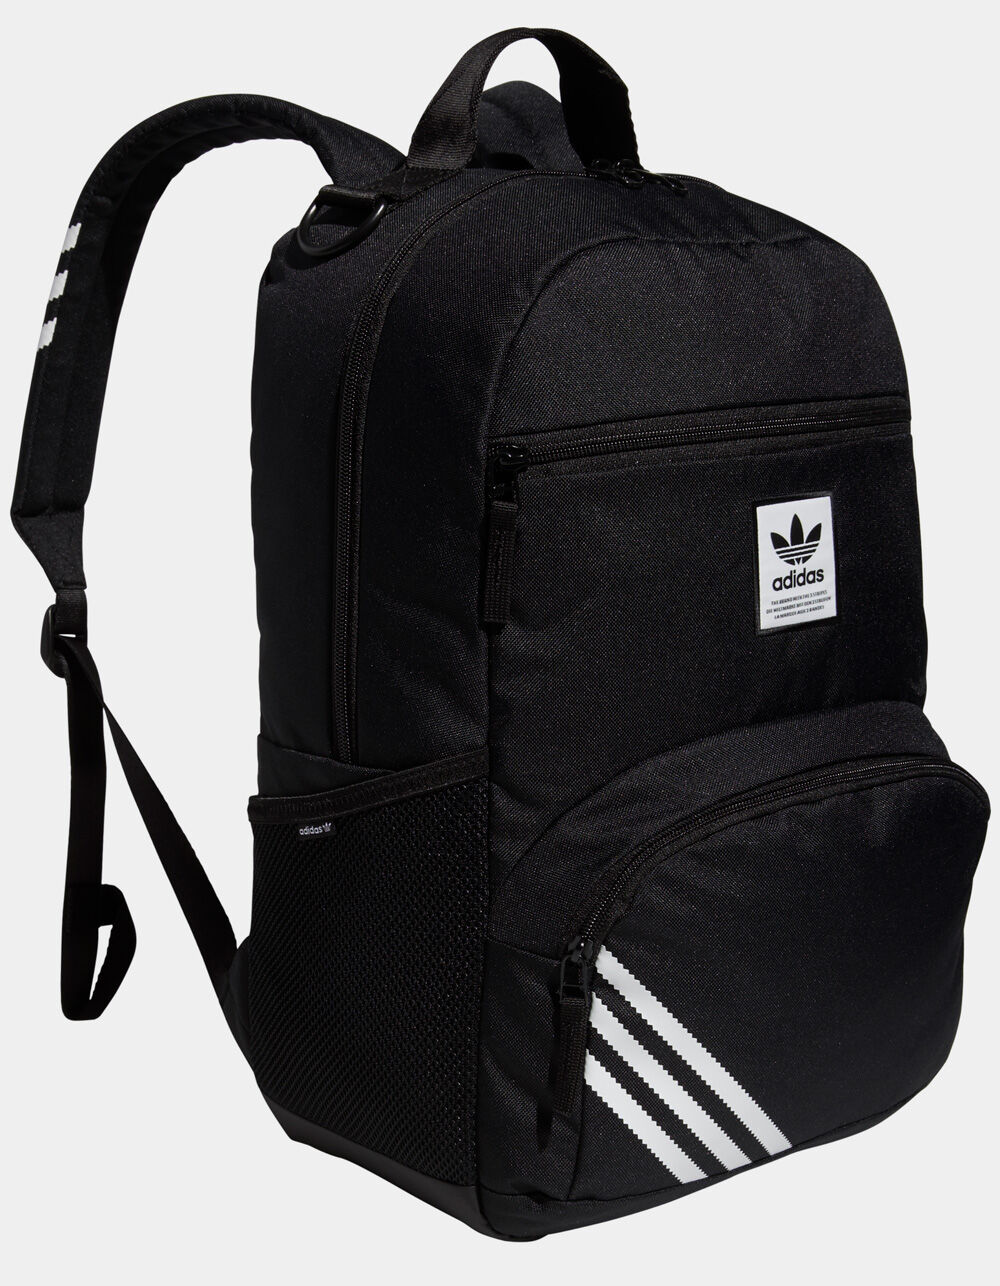 ADIDAS Originals National 2.0 Backpack - BLACK | Tillys